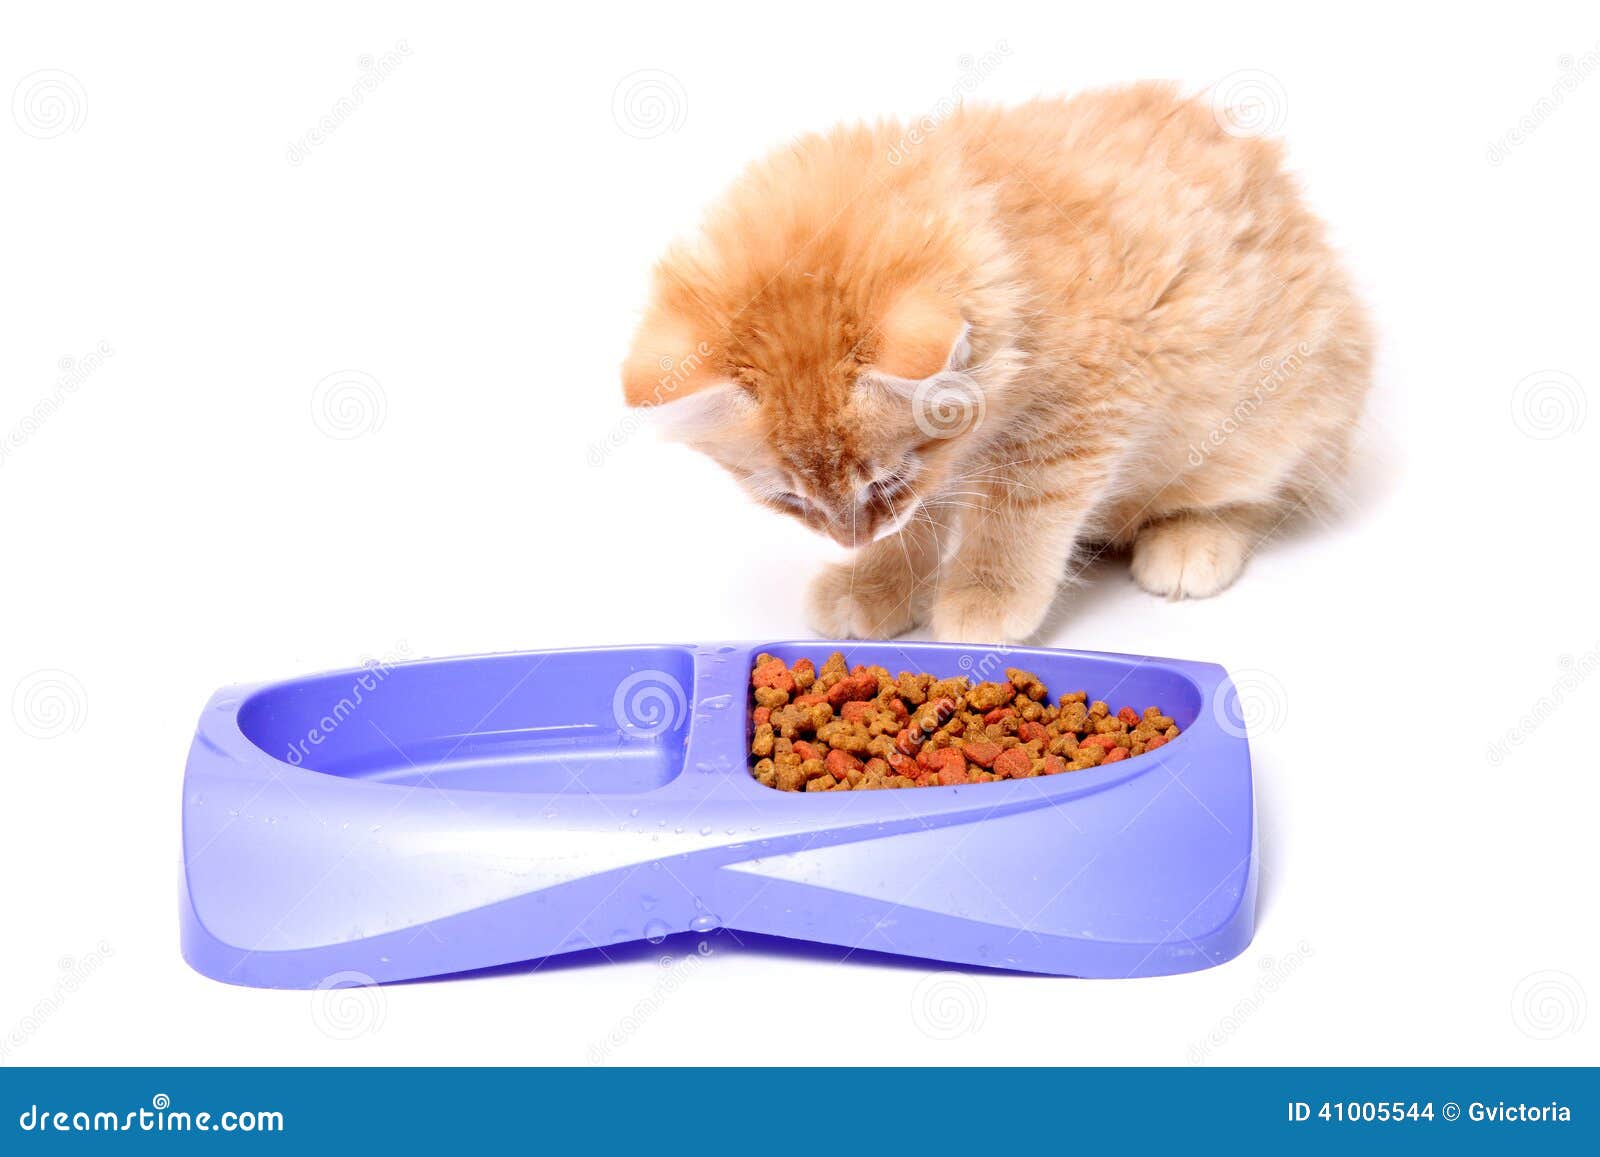 分享猫咪的饮食攻略，跟着WoWo一起学习如何买猫粮吧 - 哔哩哔哩